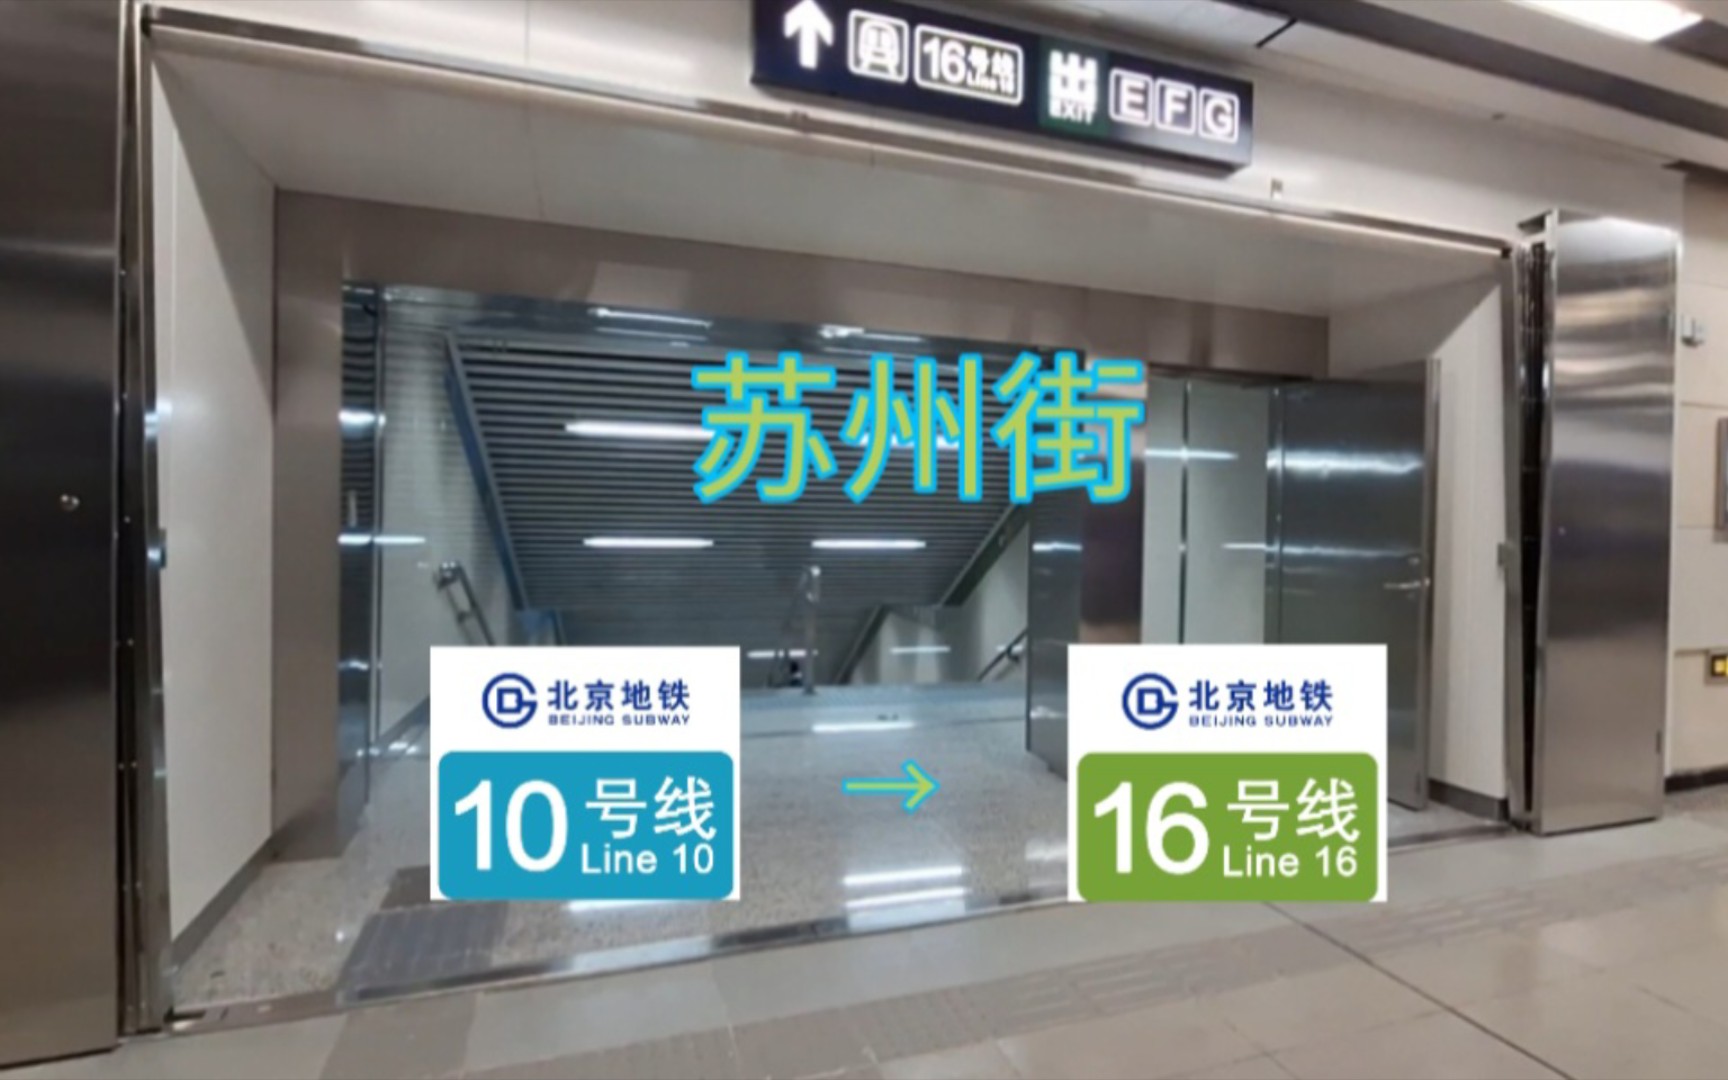 【京铁换乘站】10号线→16号线苏州街站换乘实录